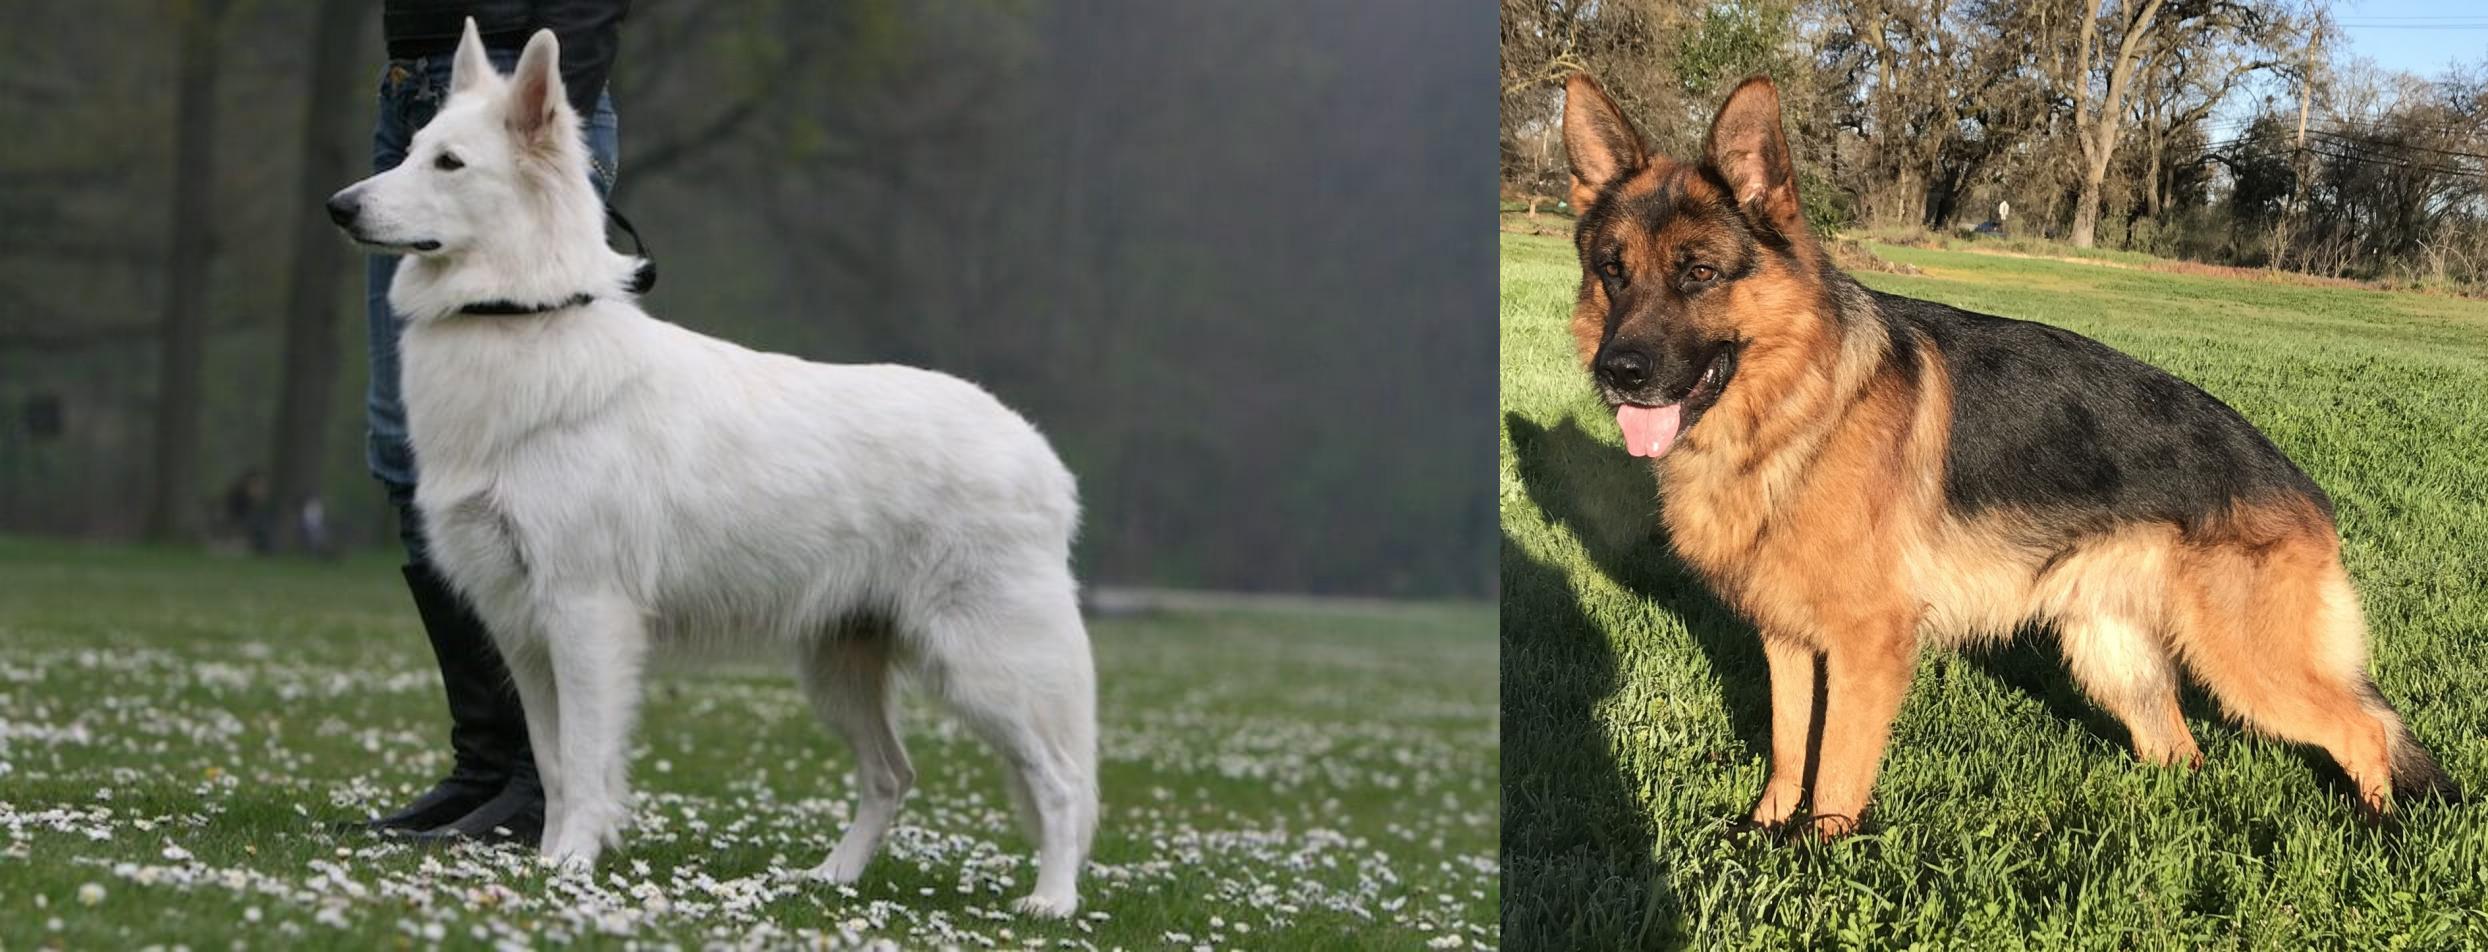 Berger Blanc Suisse Vs German Shepherd Breed Comparison